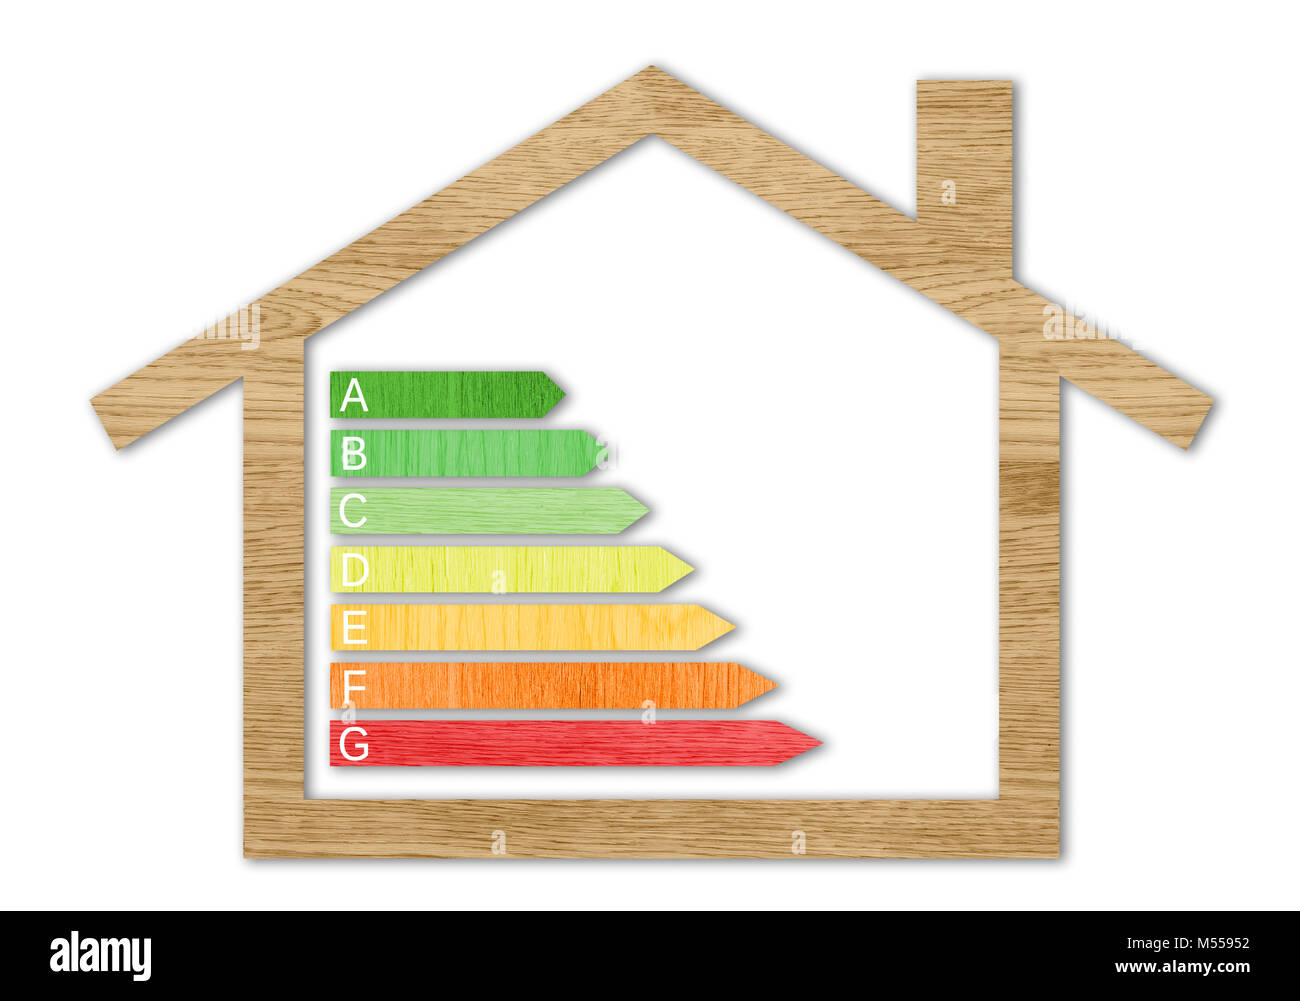 Holz Textur Energieeffizienz Zertifizierung Symbole in einem Haus Form vor einem weißen Hintergrund Stockfoto